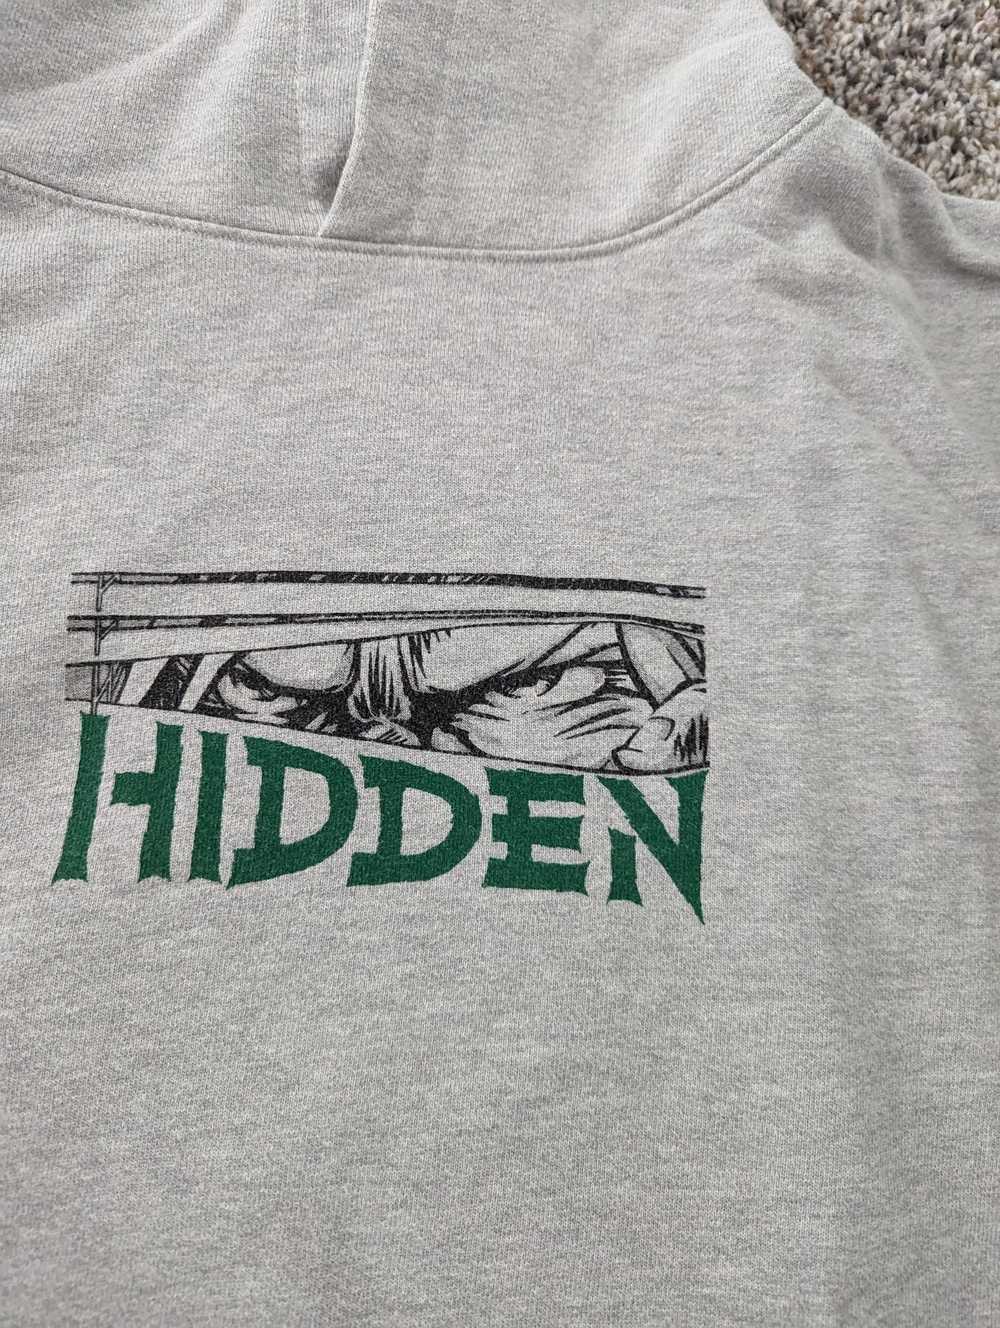 HIDDEN Hidden Blinds Hoodie - image 2